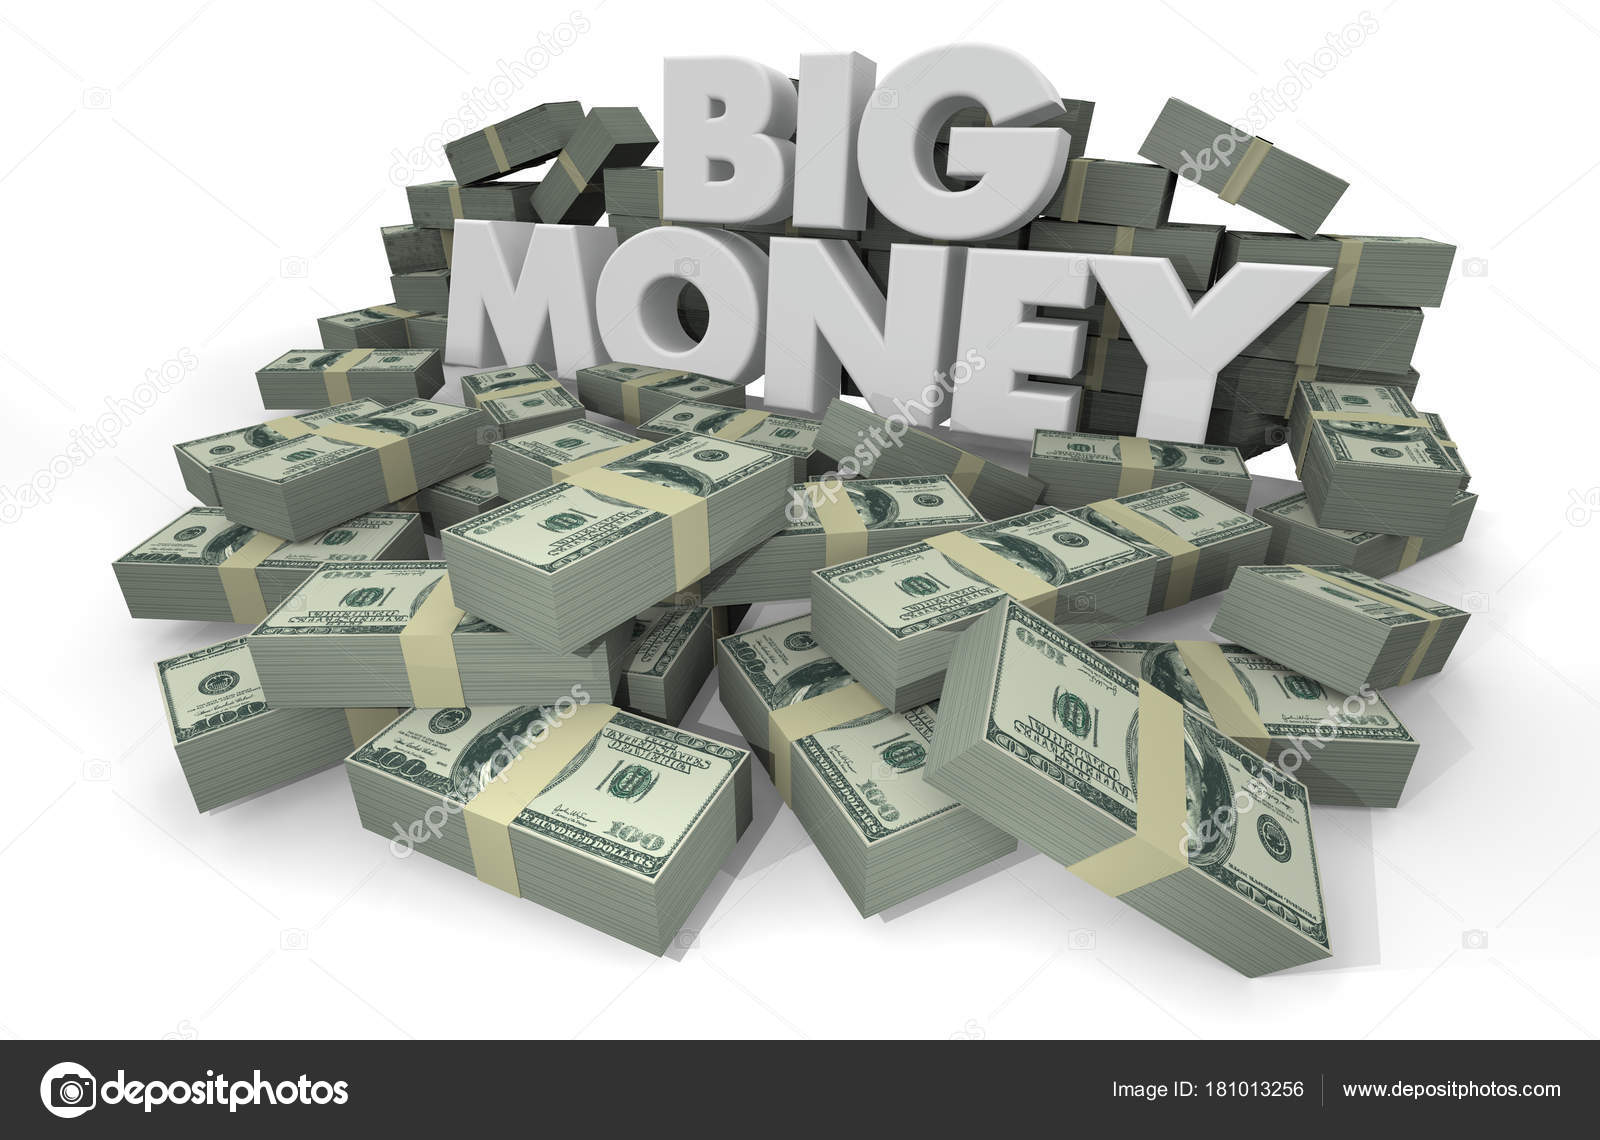 Big money pictures